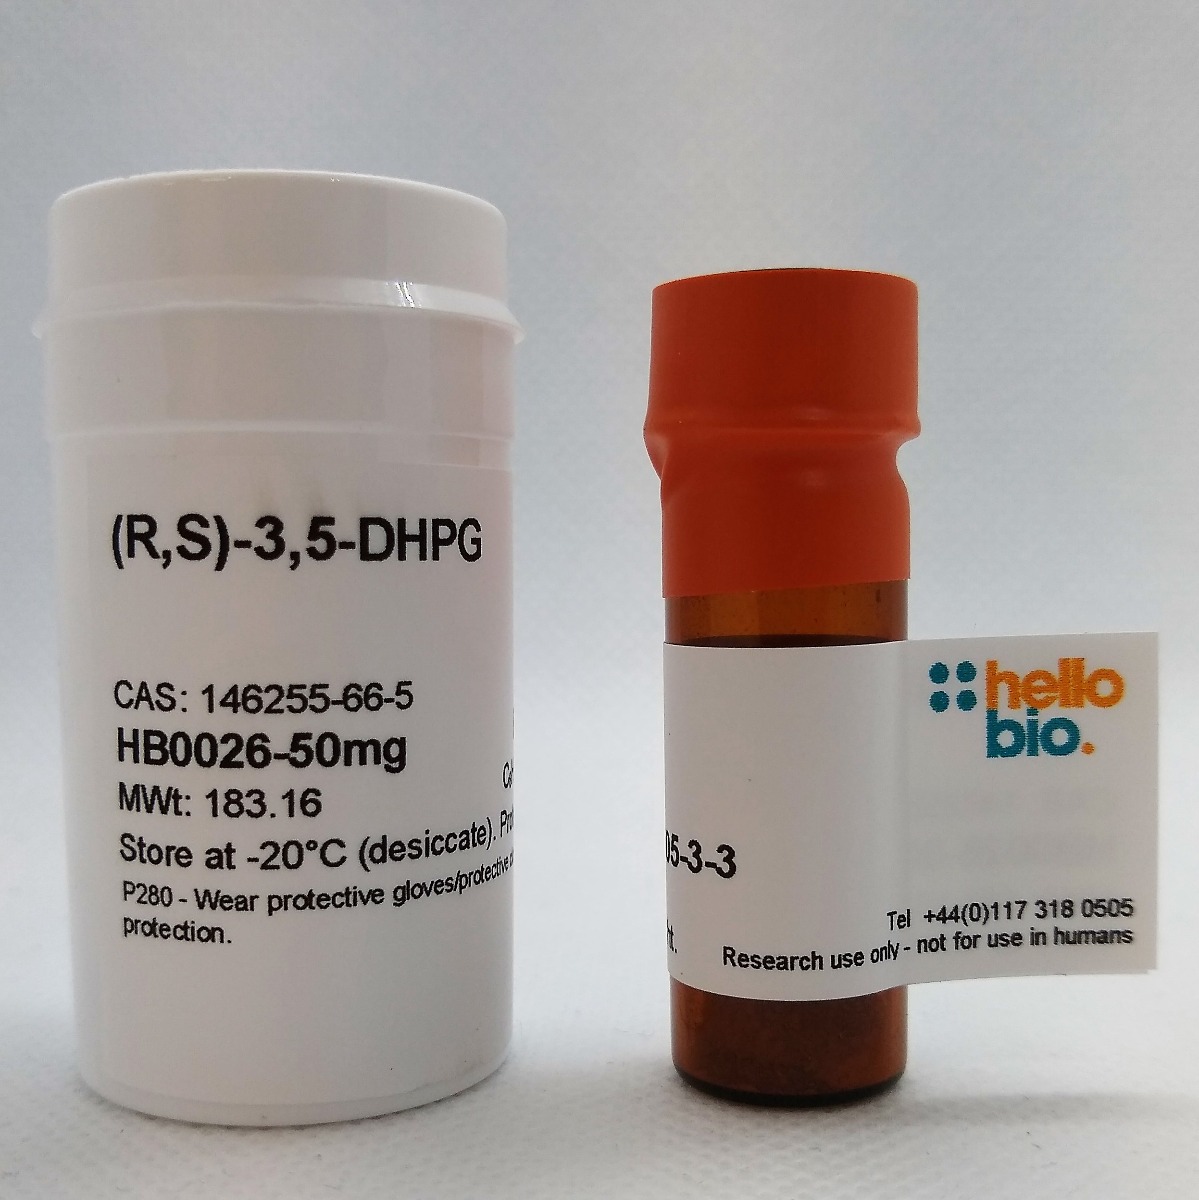 (R,S)-3,5-DHPG product vial image | Hello Bio